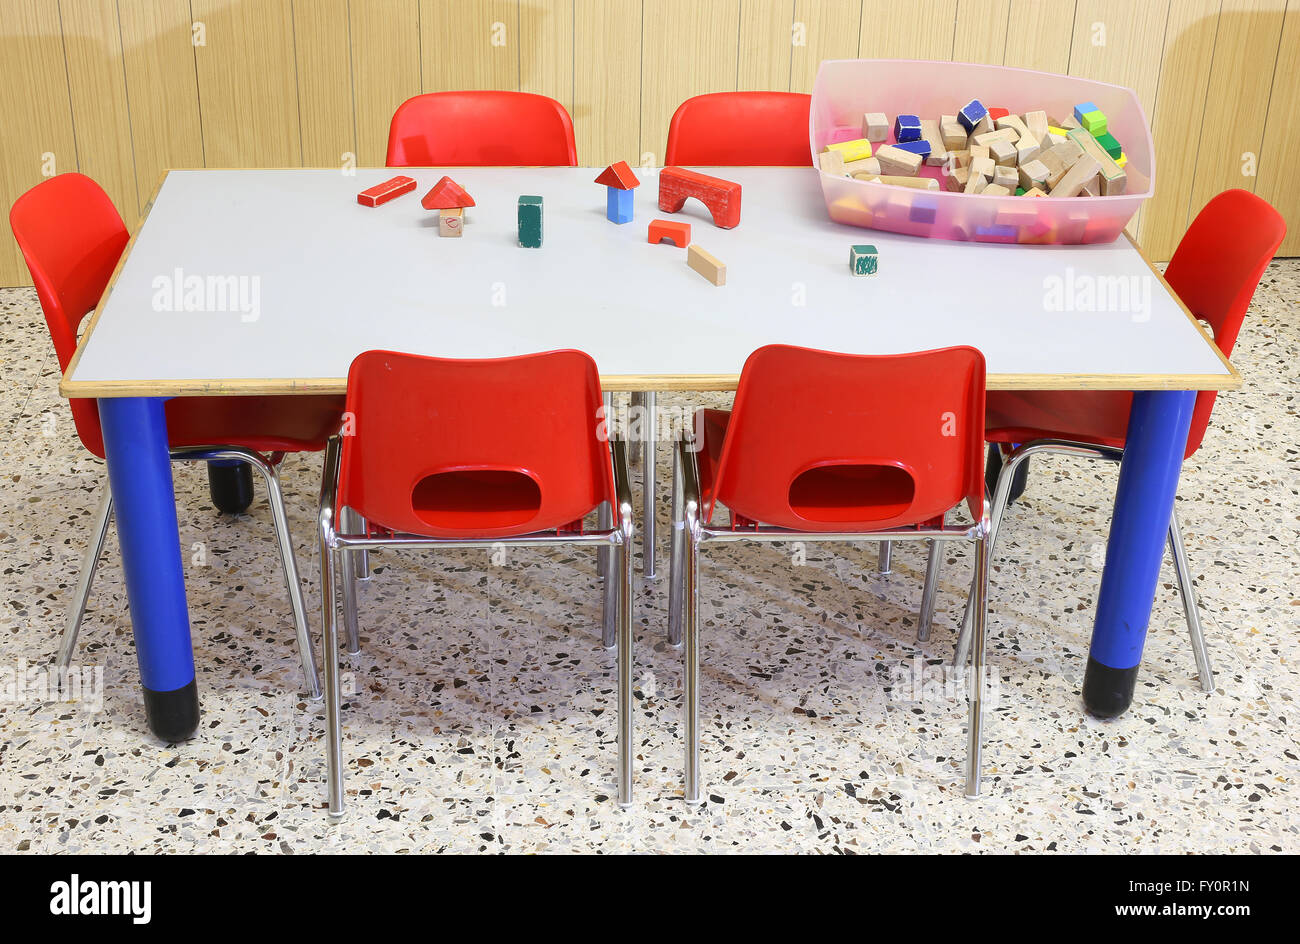 Classe maternelle avec les jouets en bois sur la table Banque D'Images